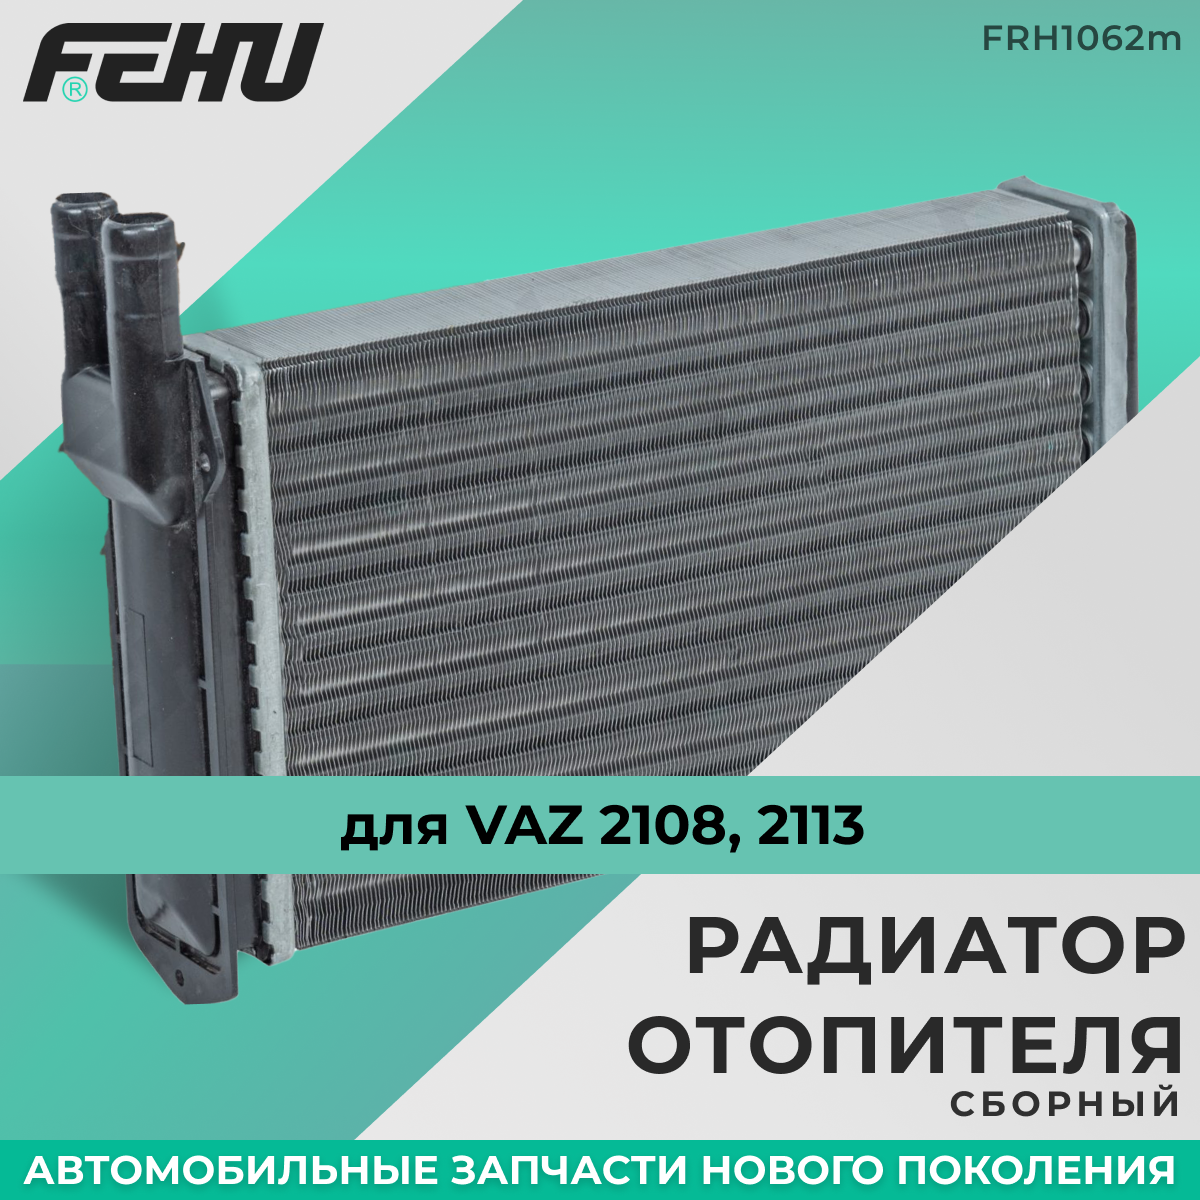 Радиатор отопителя FEHU (феху) сборный ВАЗ 2104-05 арт. 21058101060